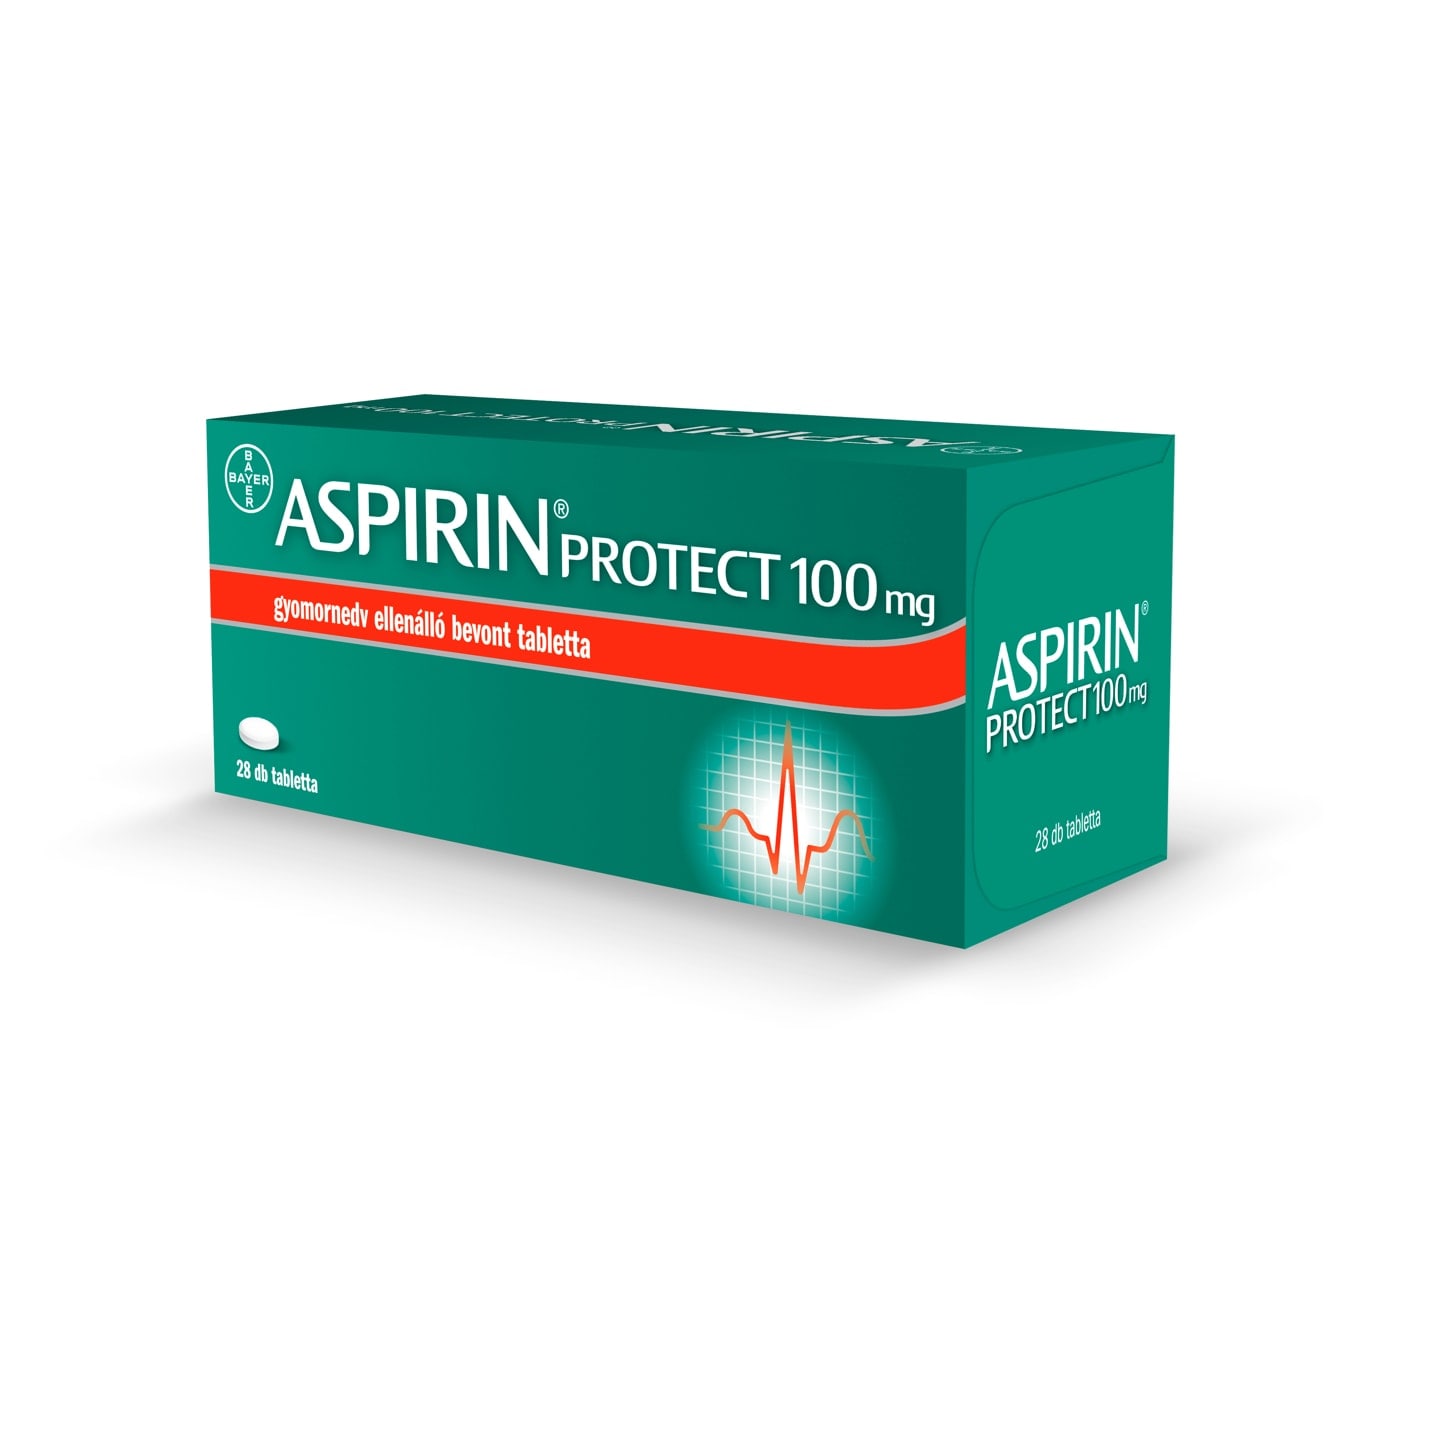 Csodagyógyszer-e az aszpirin? - Gondosorvos Medical Center